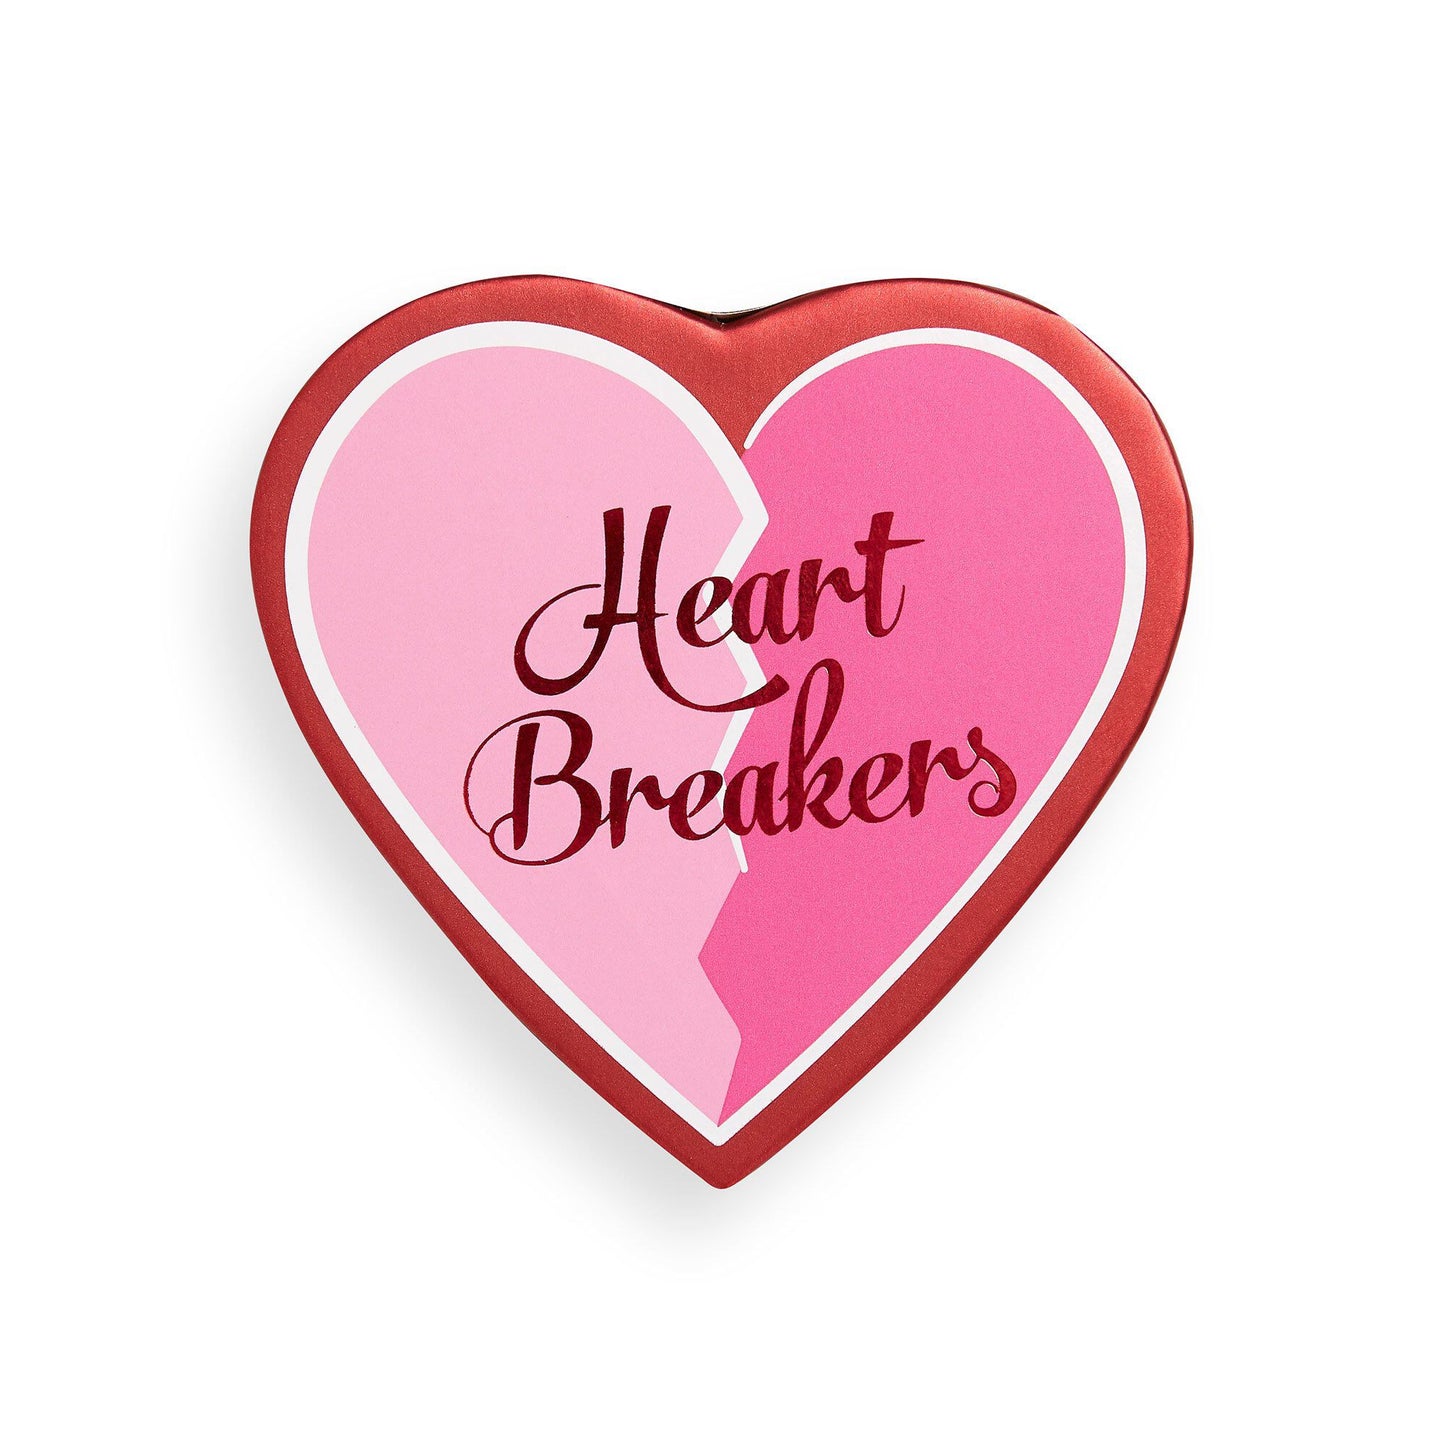 Revolution I Heart Revolution Heart Breakers Matte Blush Brave